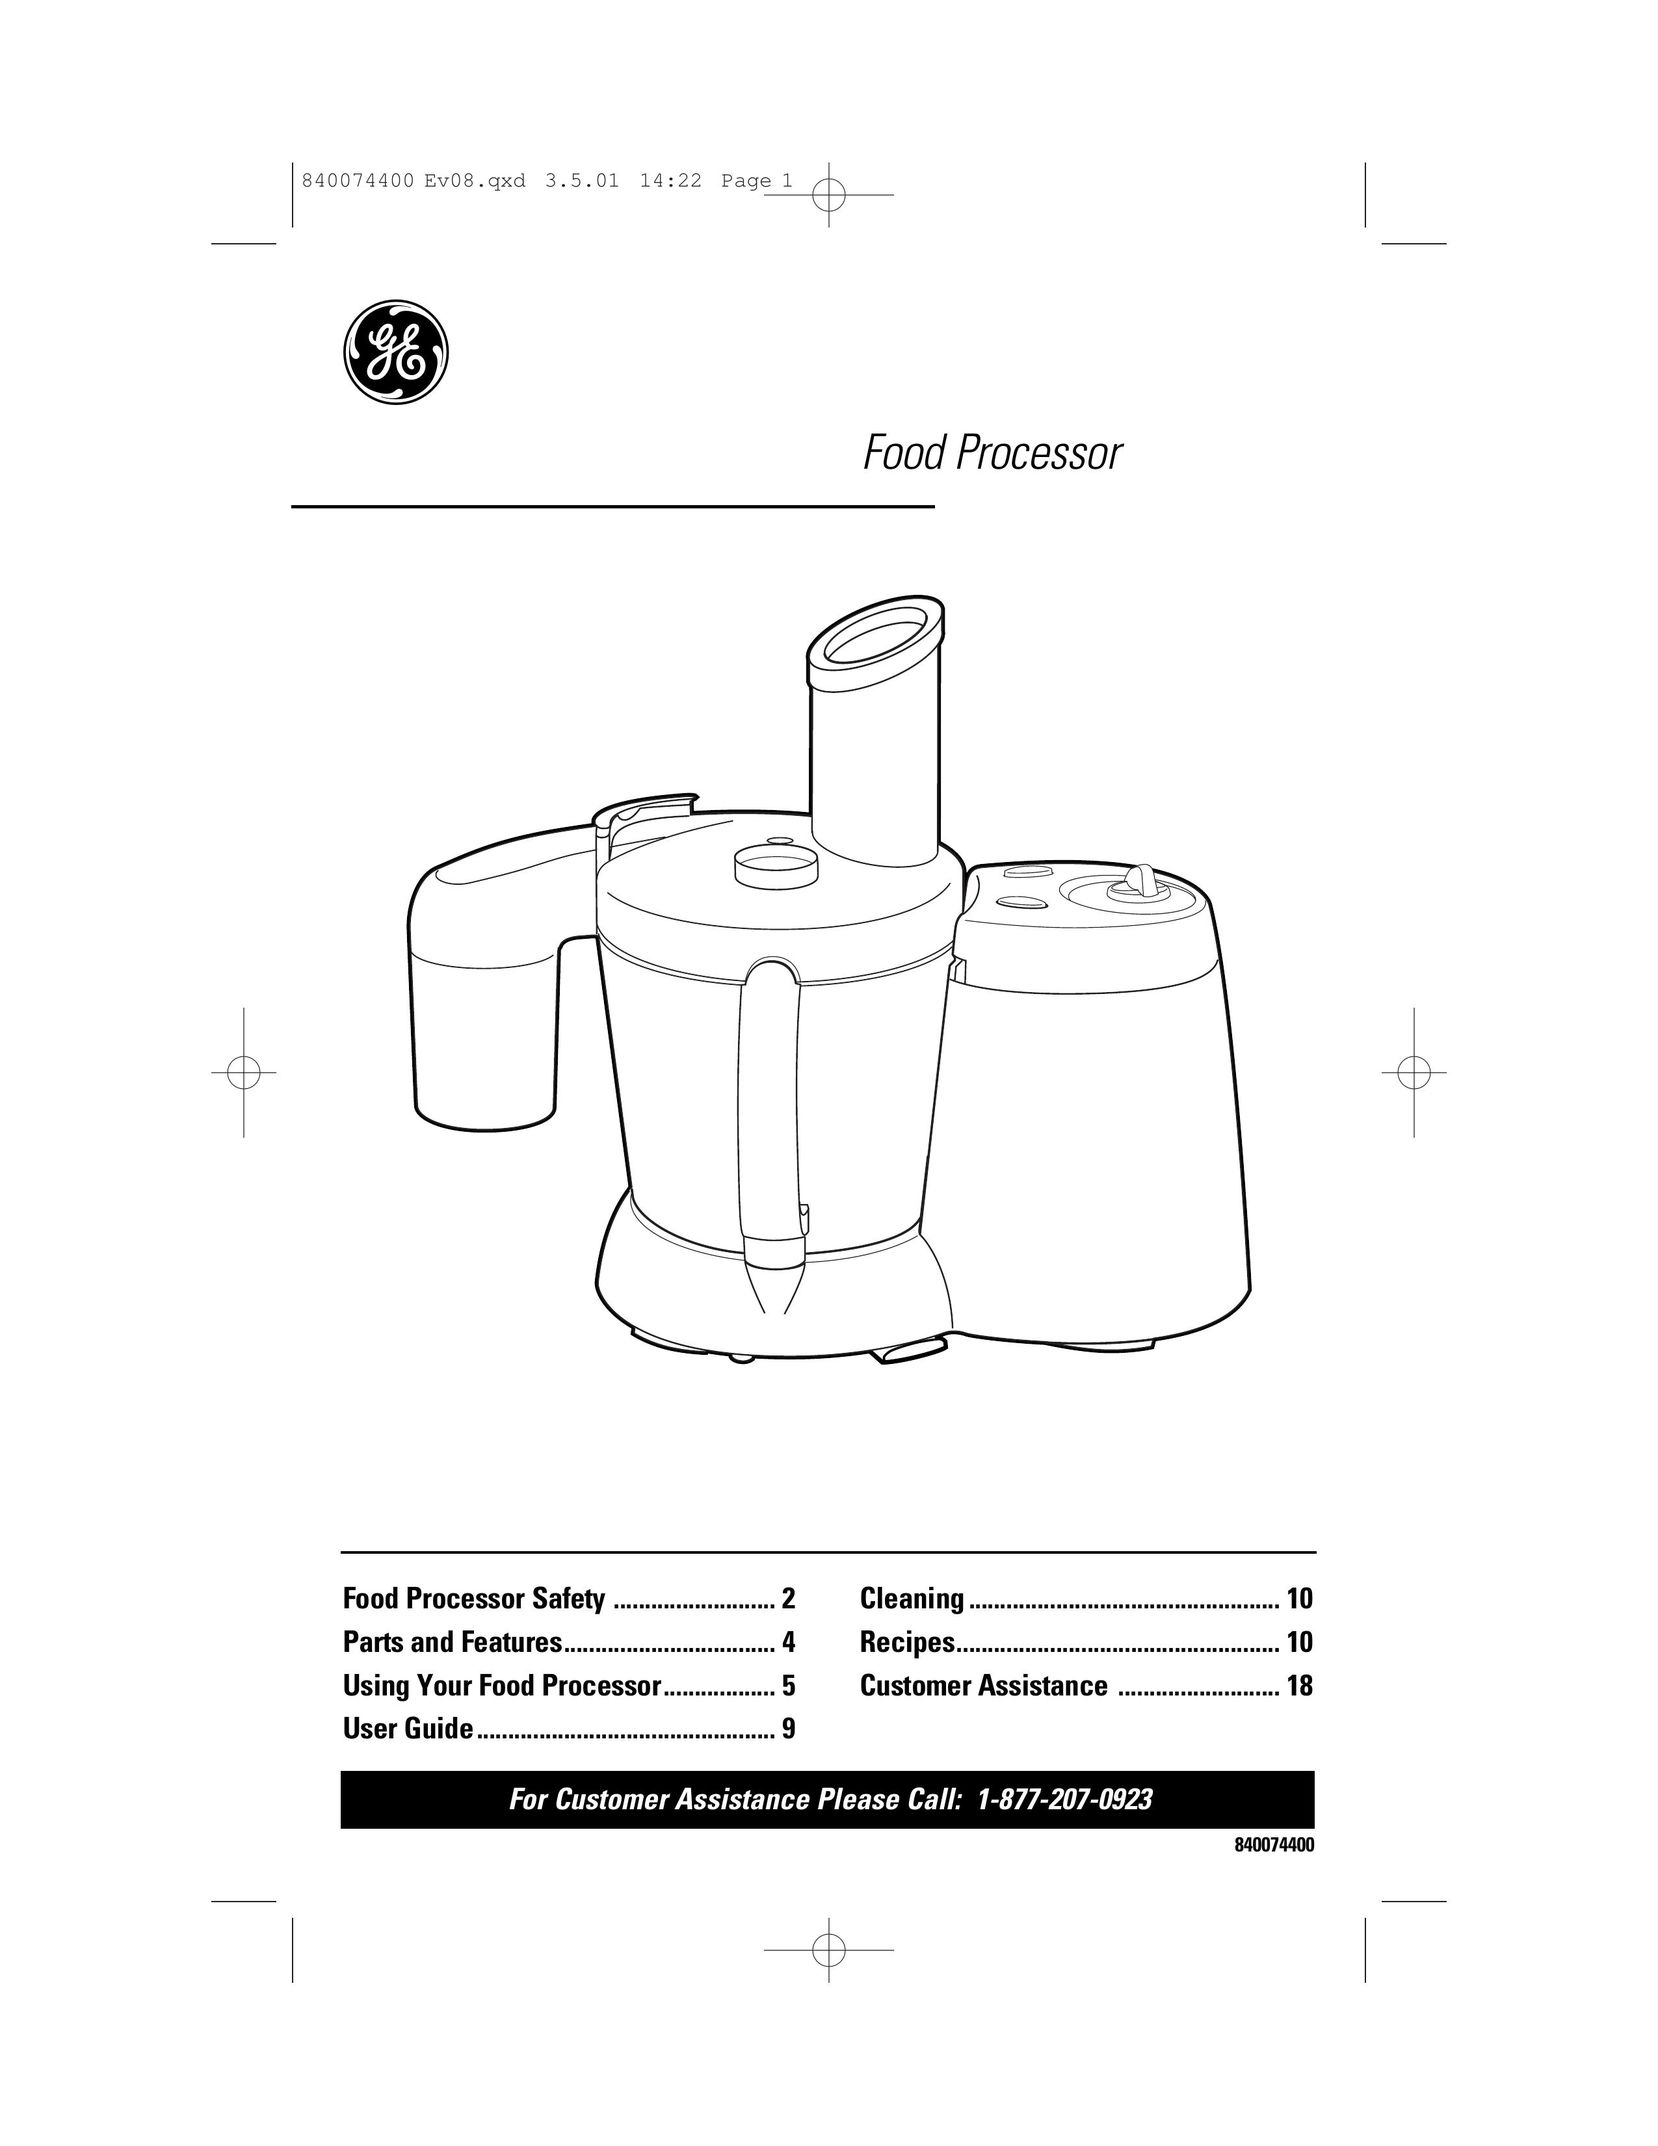 GE 106622 Food Processor User Manual